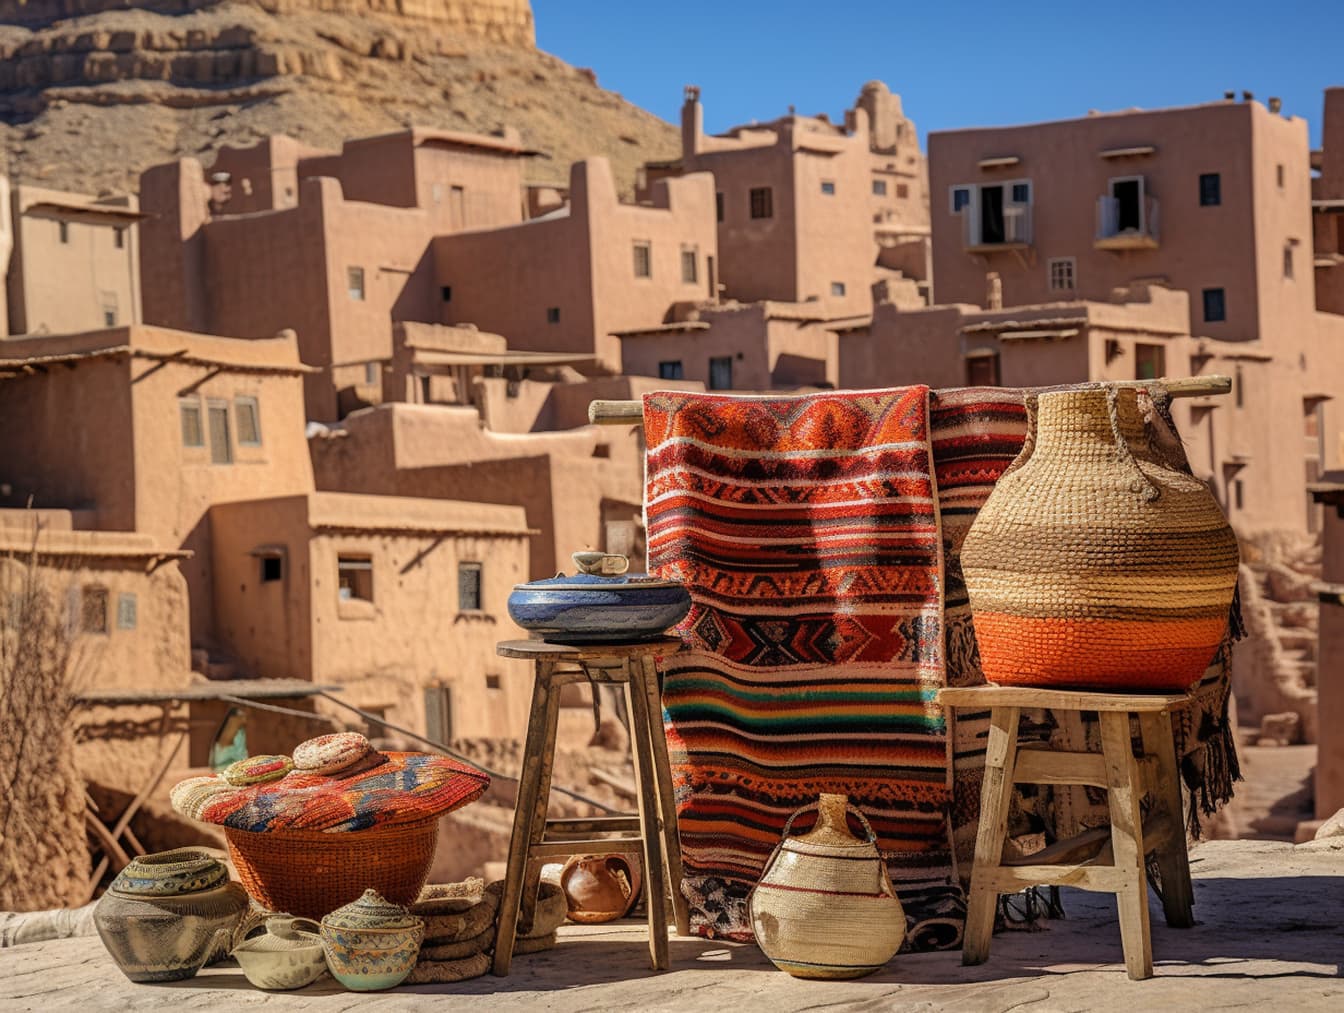 Ulična tržnica u Maroku s košarama i keramikom